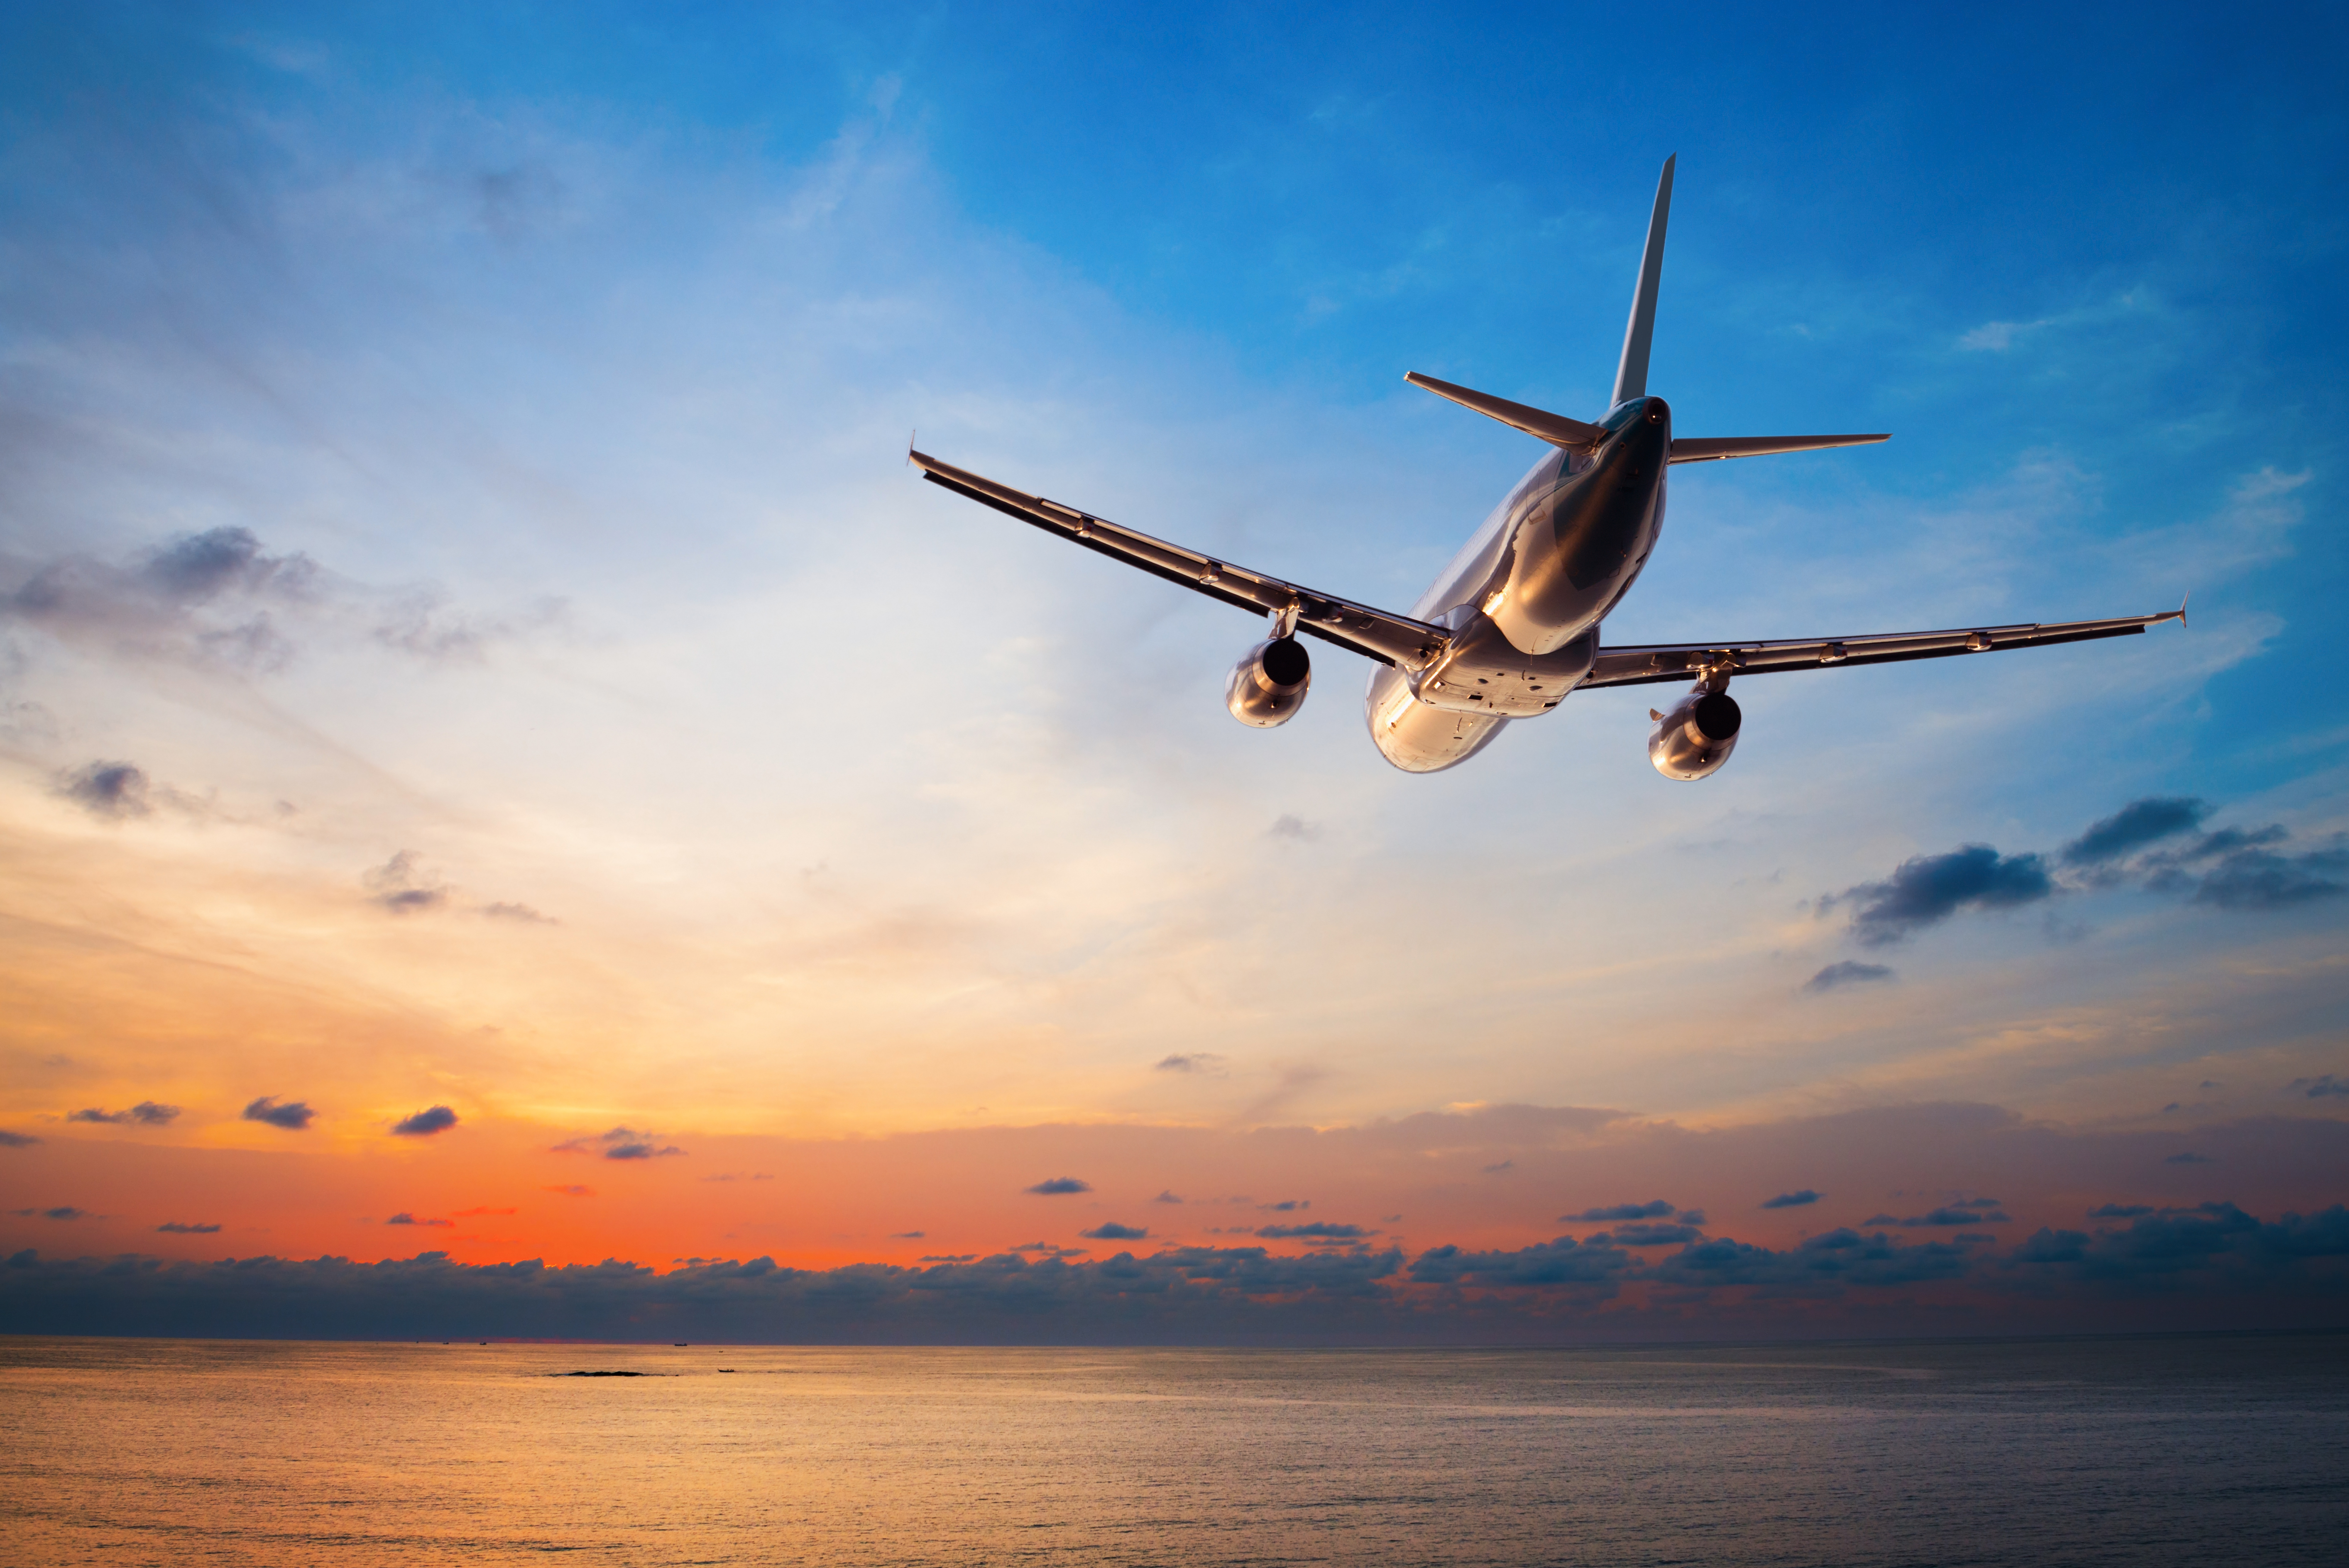 Ein Flugzeug fliegt vor einem Hintergrund mit Sonnenuntergang | Quelle: Shutterstock